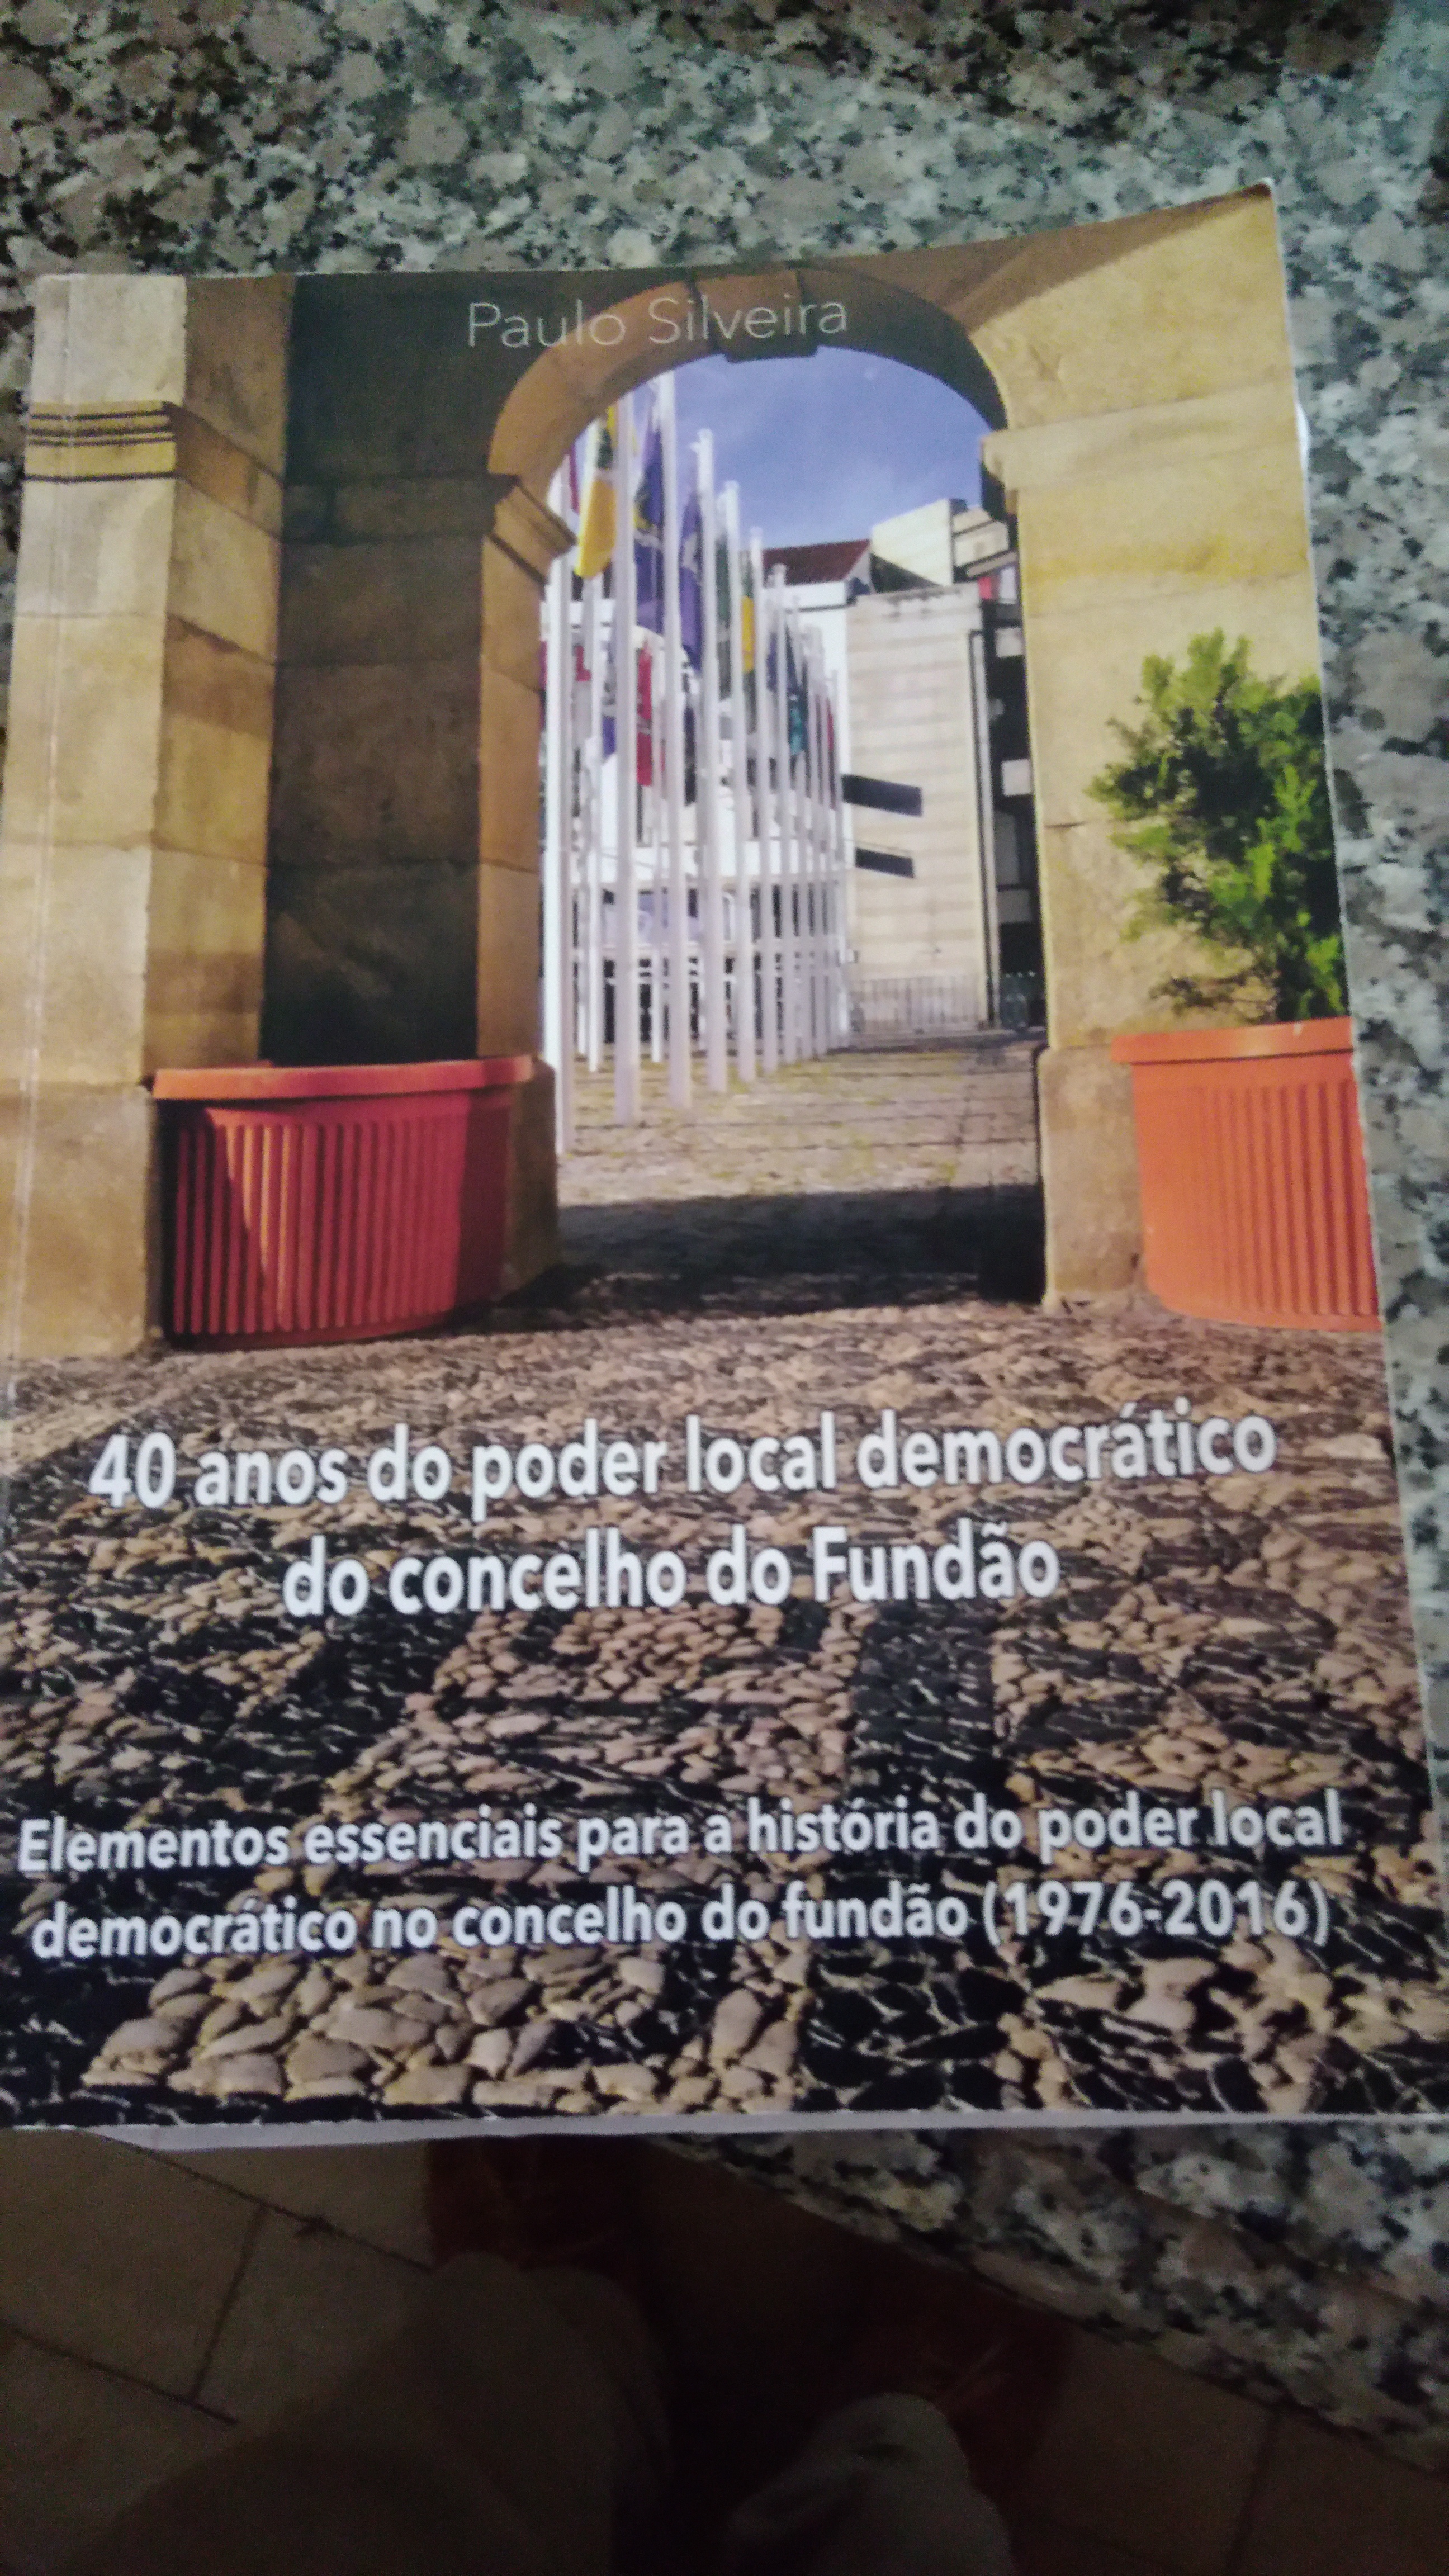 Livro “Elementos essenciais para a história dos 40 anos do poder local democrático do concelho do Fundão”, de Paulo Silveira